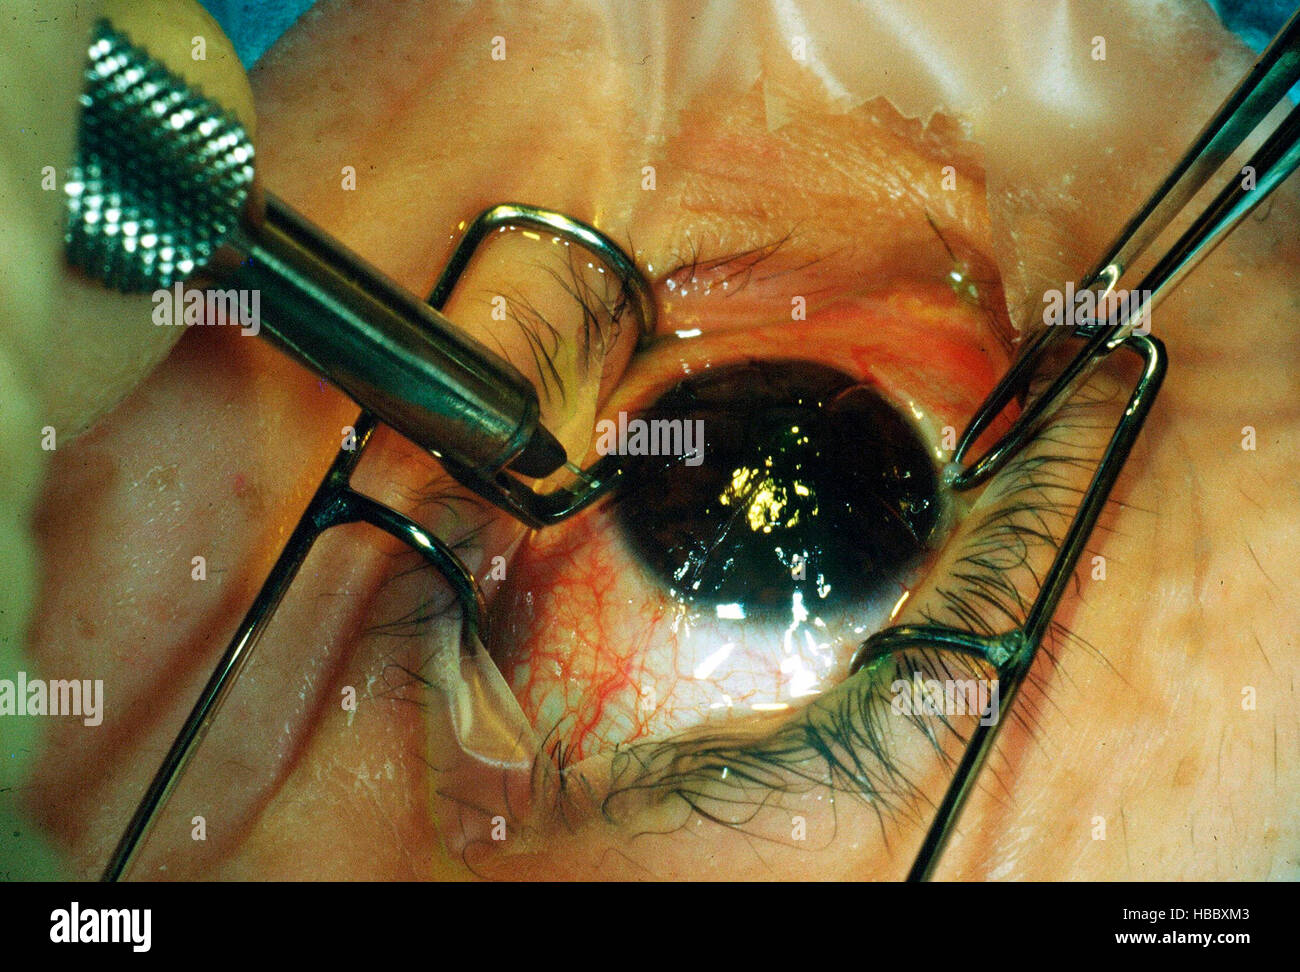 La chirurgie oculaire, kératotomie radiaire opération oeil radial pour corriger la vue courte, 1985 Banque D'Images